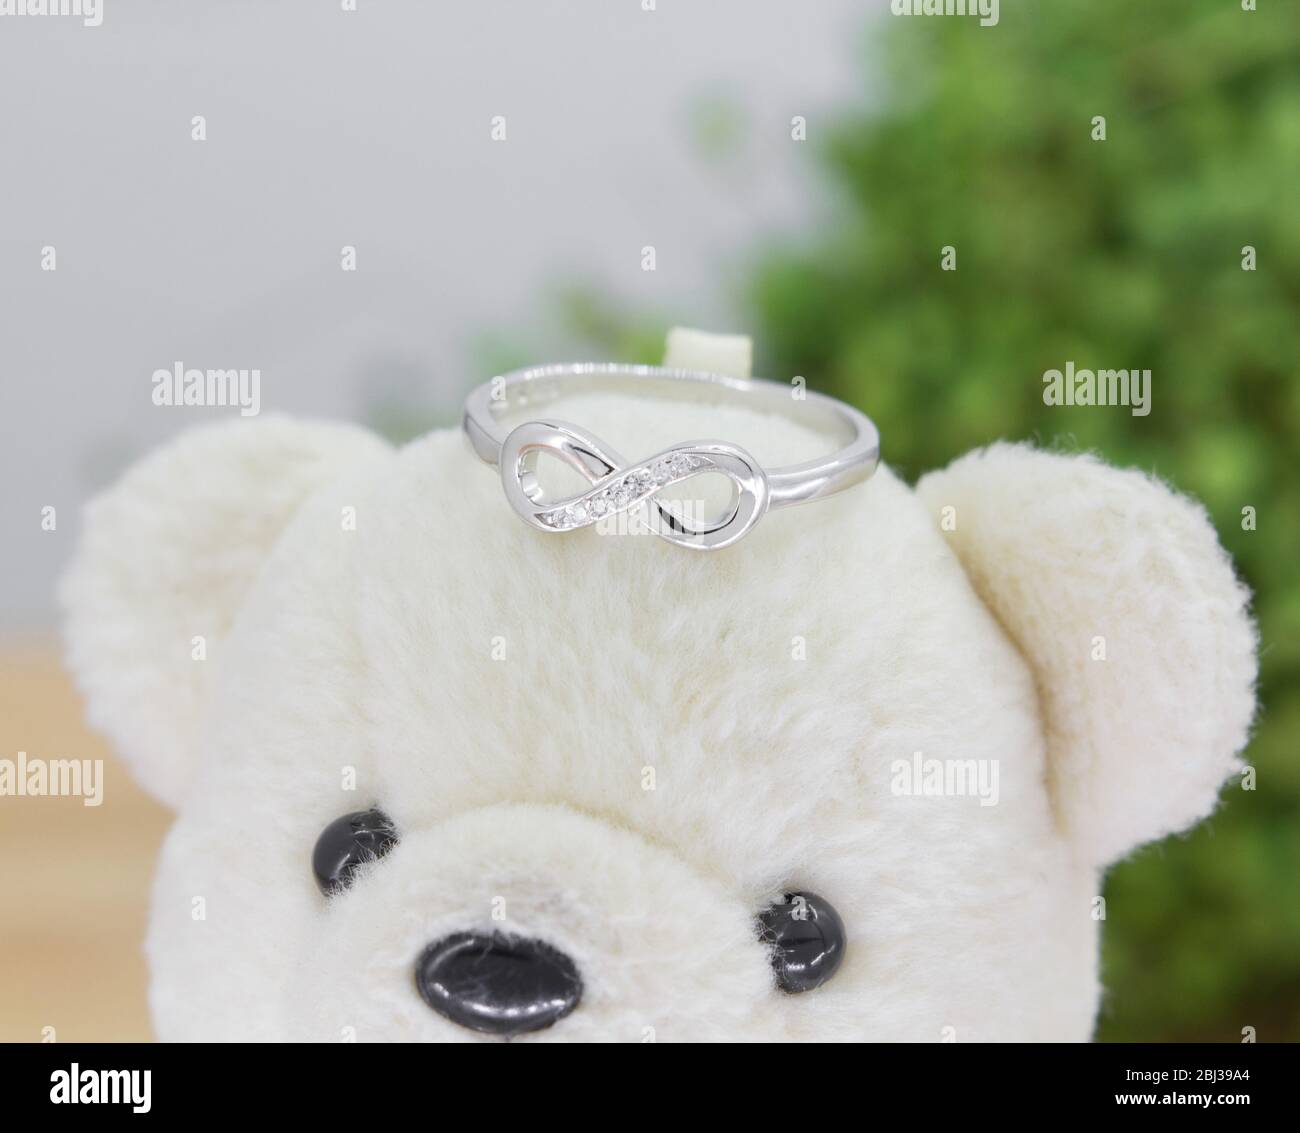 magnifique anneau argent en forme d'infini décoré de diamants s'affichant sur un ours en peluche Banque D'Images